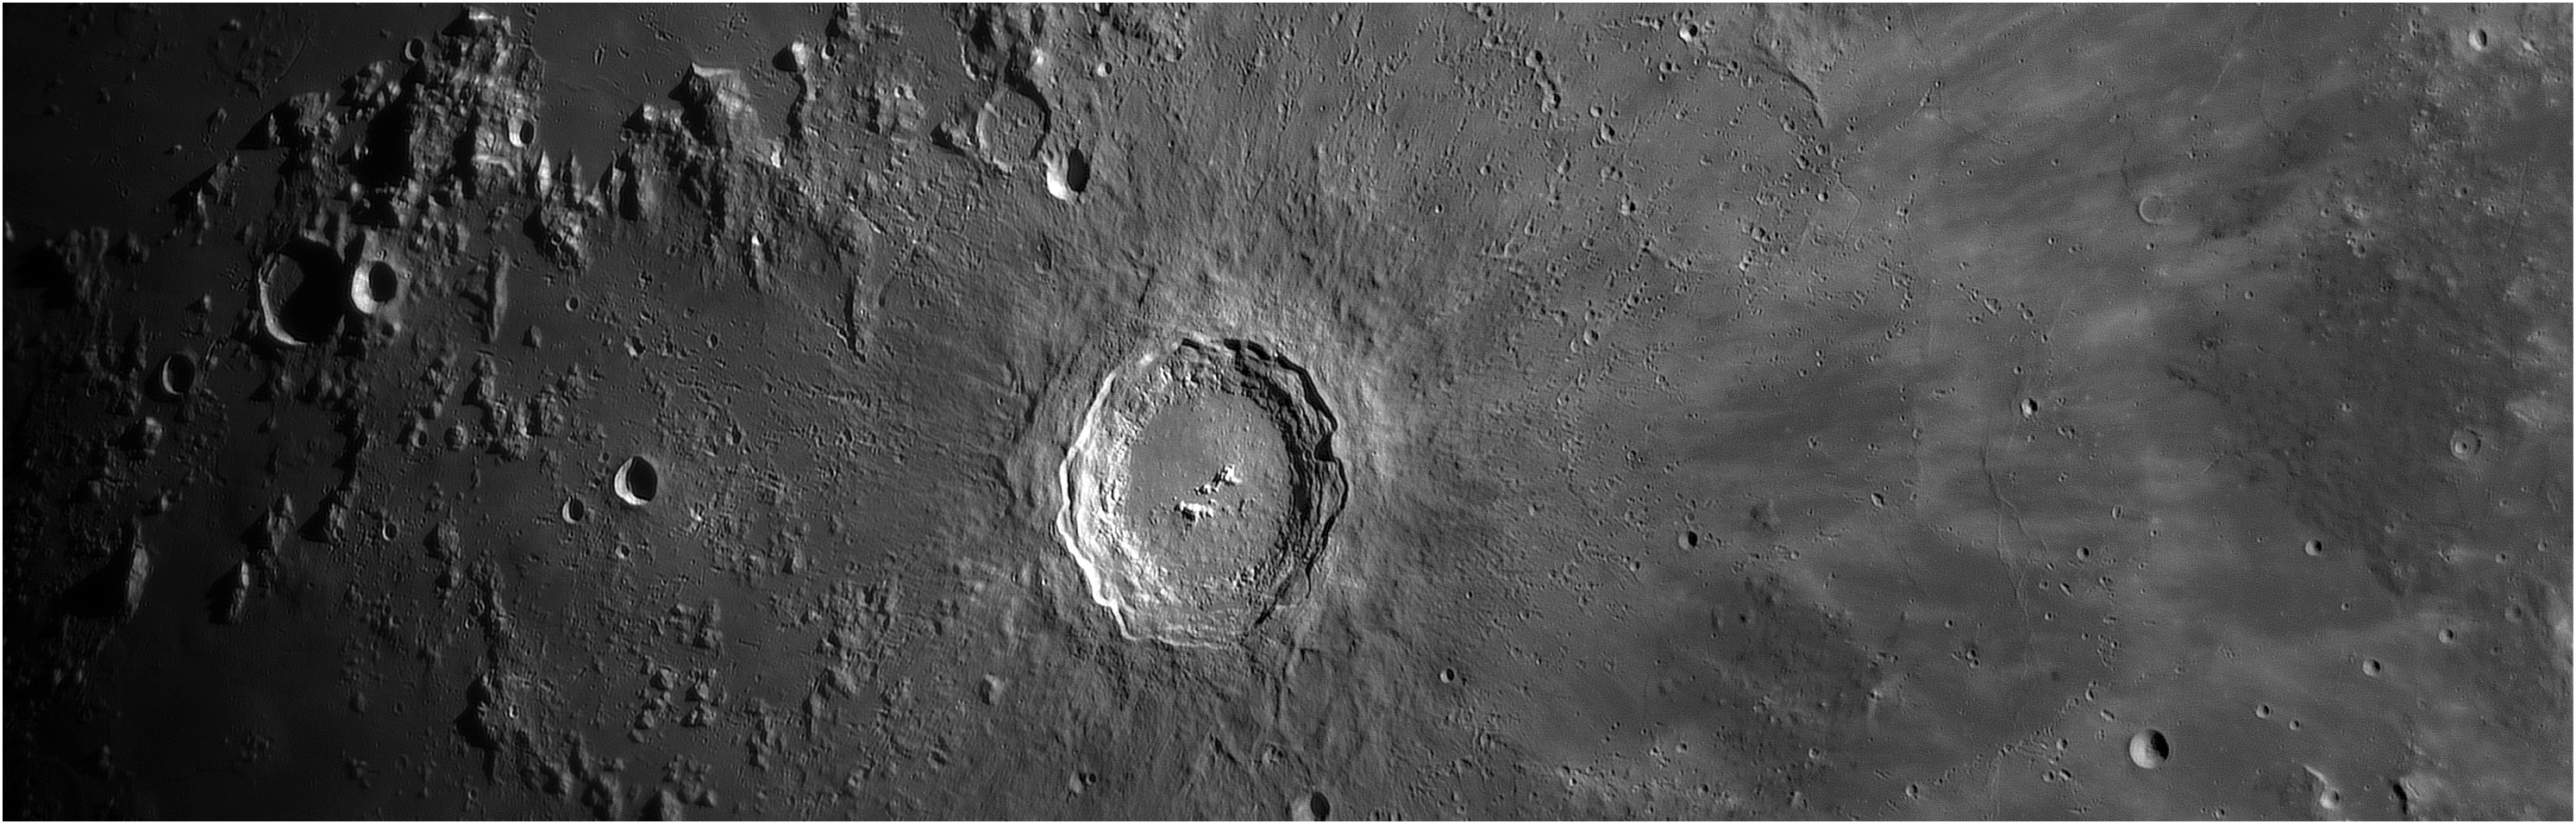 2019_05_14 mosaïque autour de Copernic